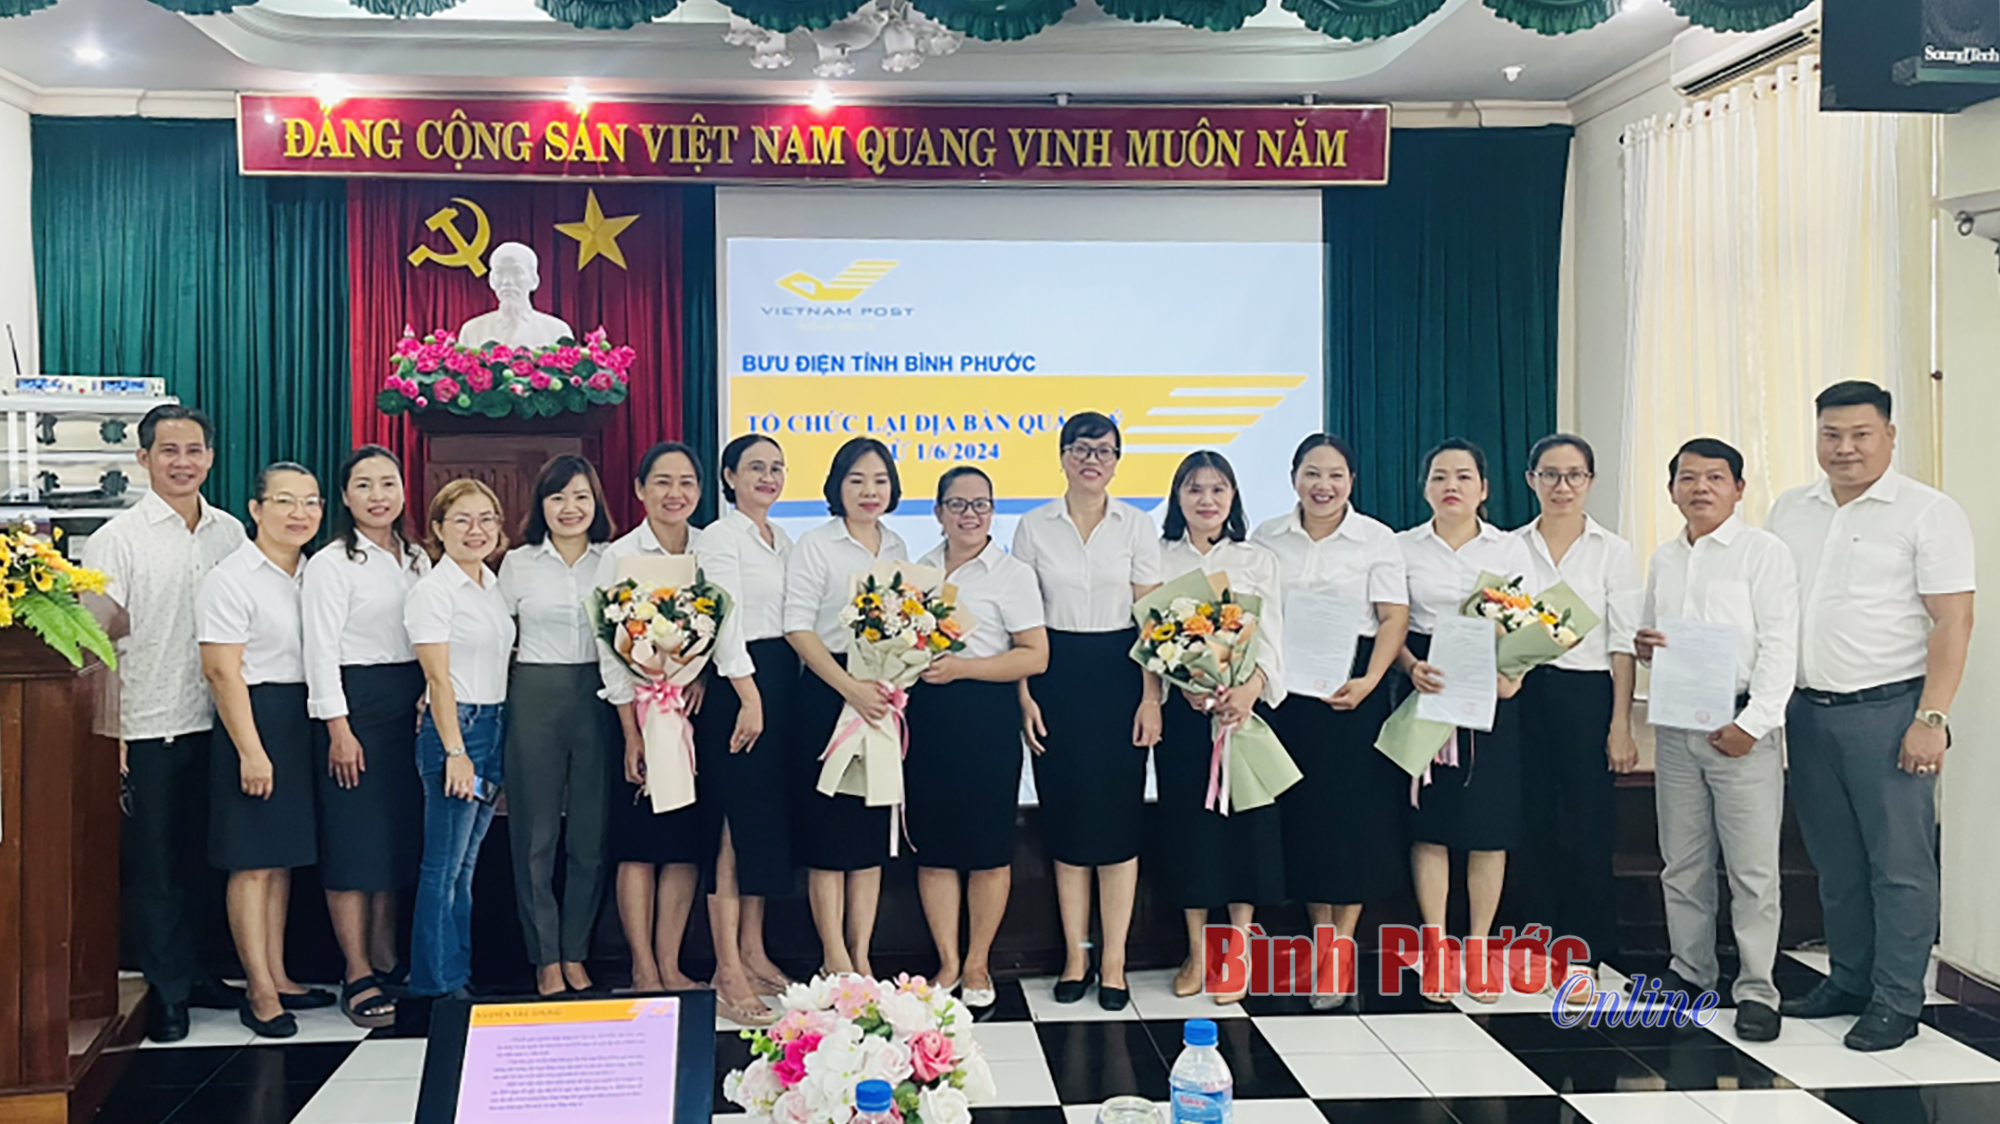 Bưu điện tỉnh Bình Phước: Sáp nhập nhiều đơn vị từ 1-6